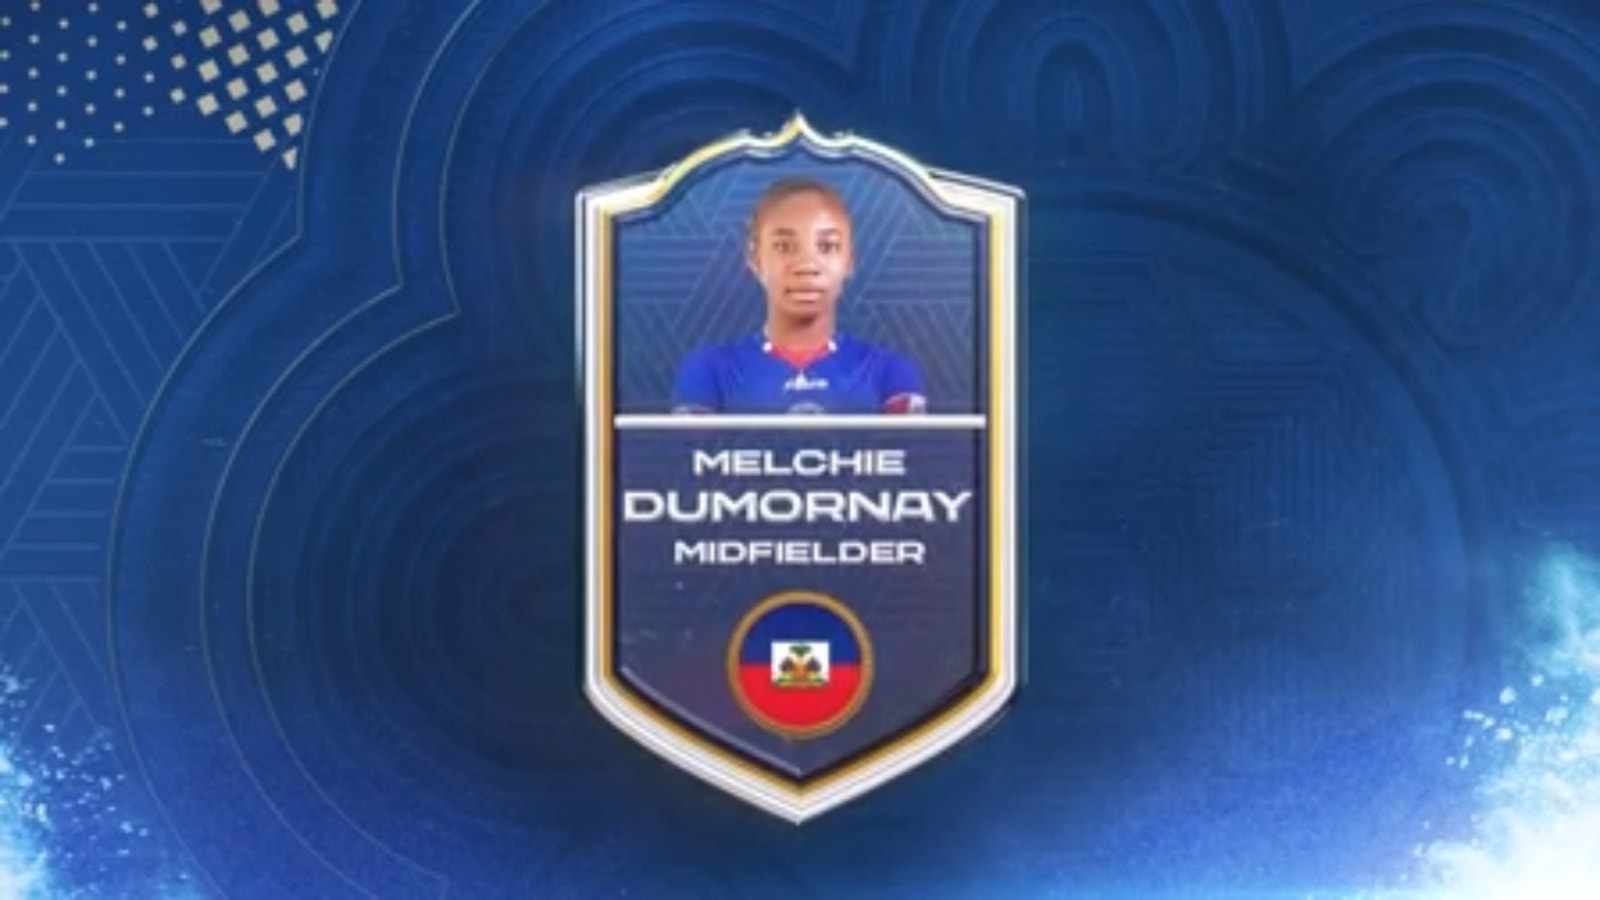 Haiti'den Melchie Dumornay: 20 numara |  Aly Wagner'in 2023 FIFA Kadınlar Dünya Kupası'ndaki en iyi 25 oyuncusu